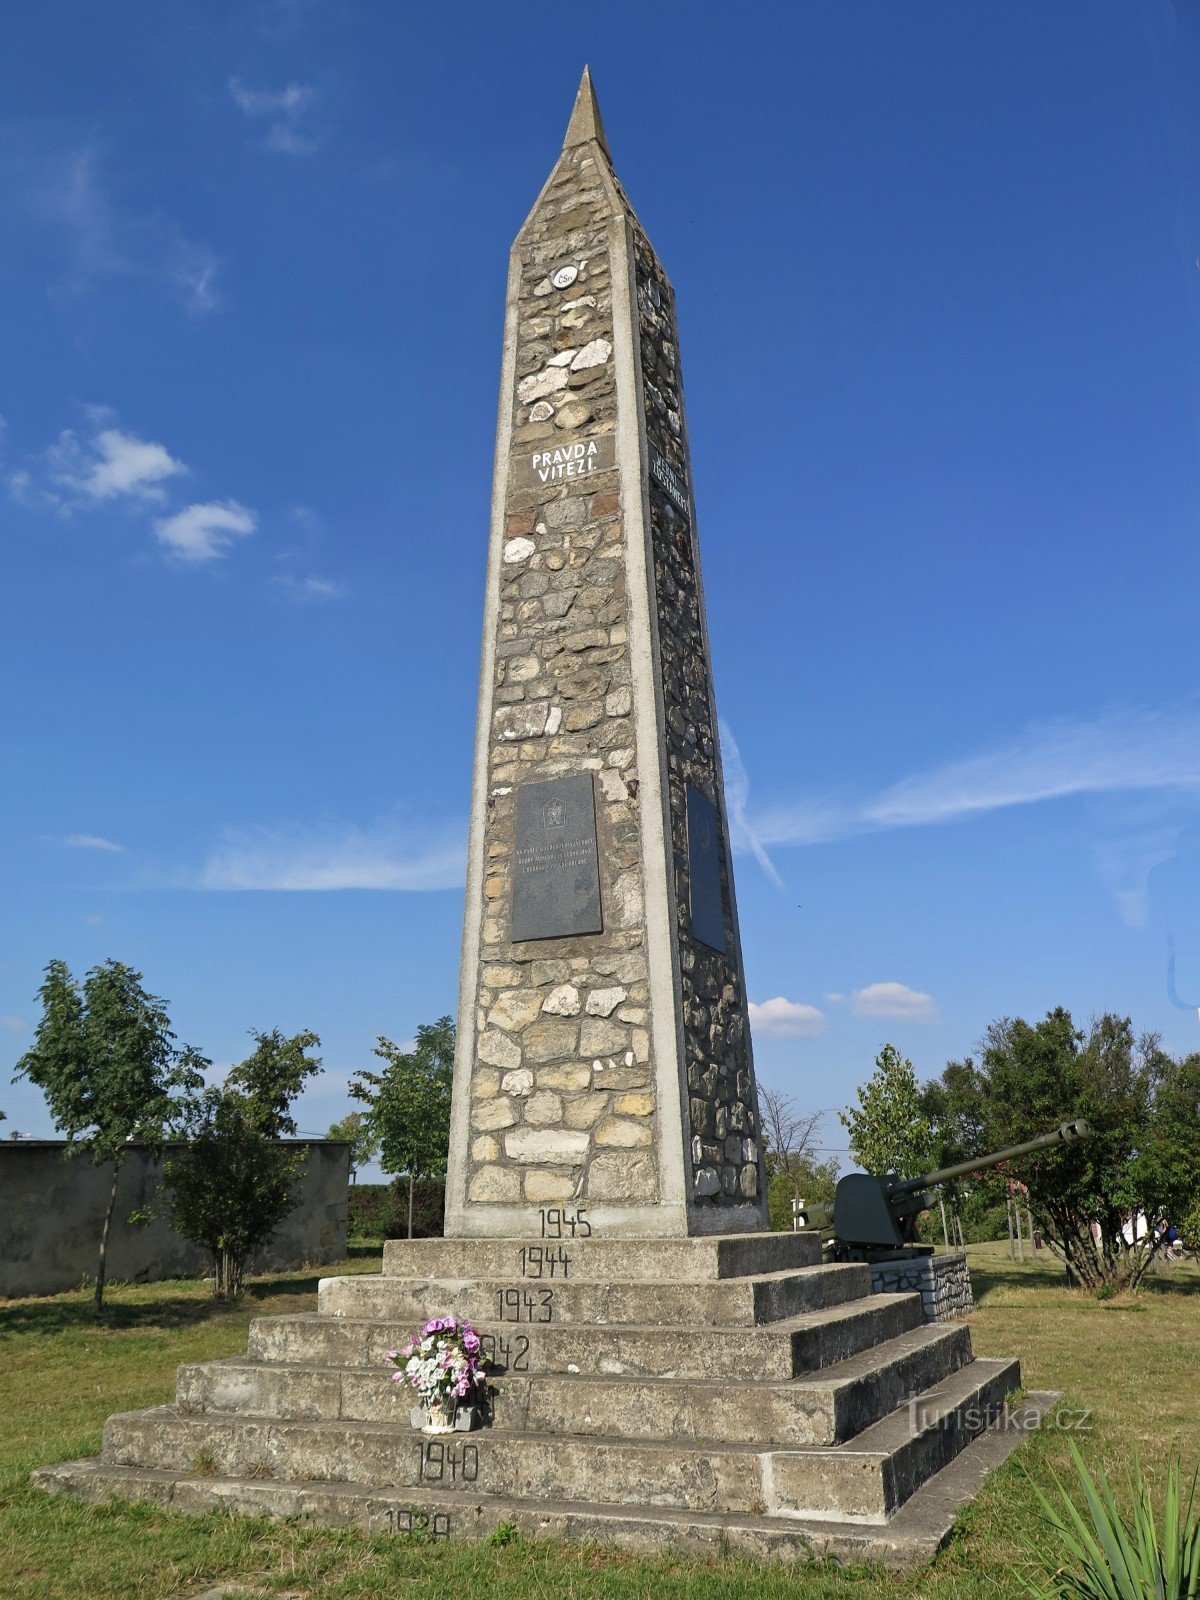 Heuvel van vrede in Vrbica